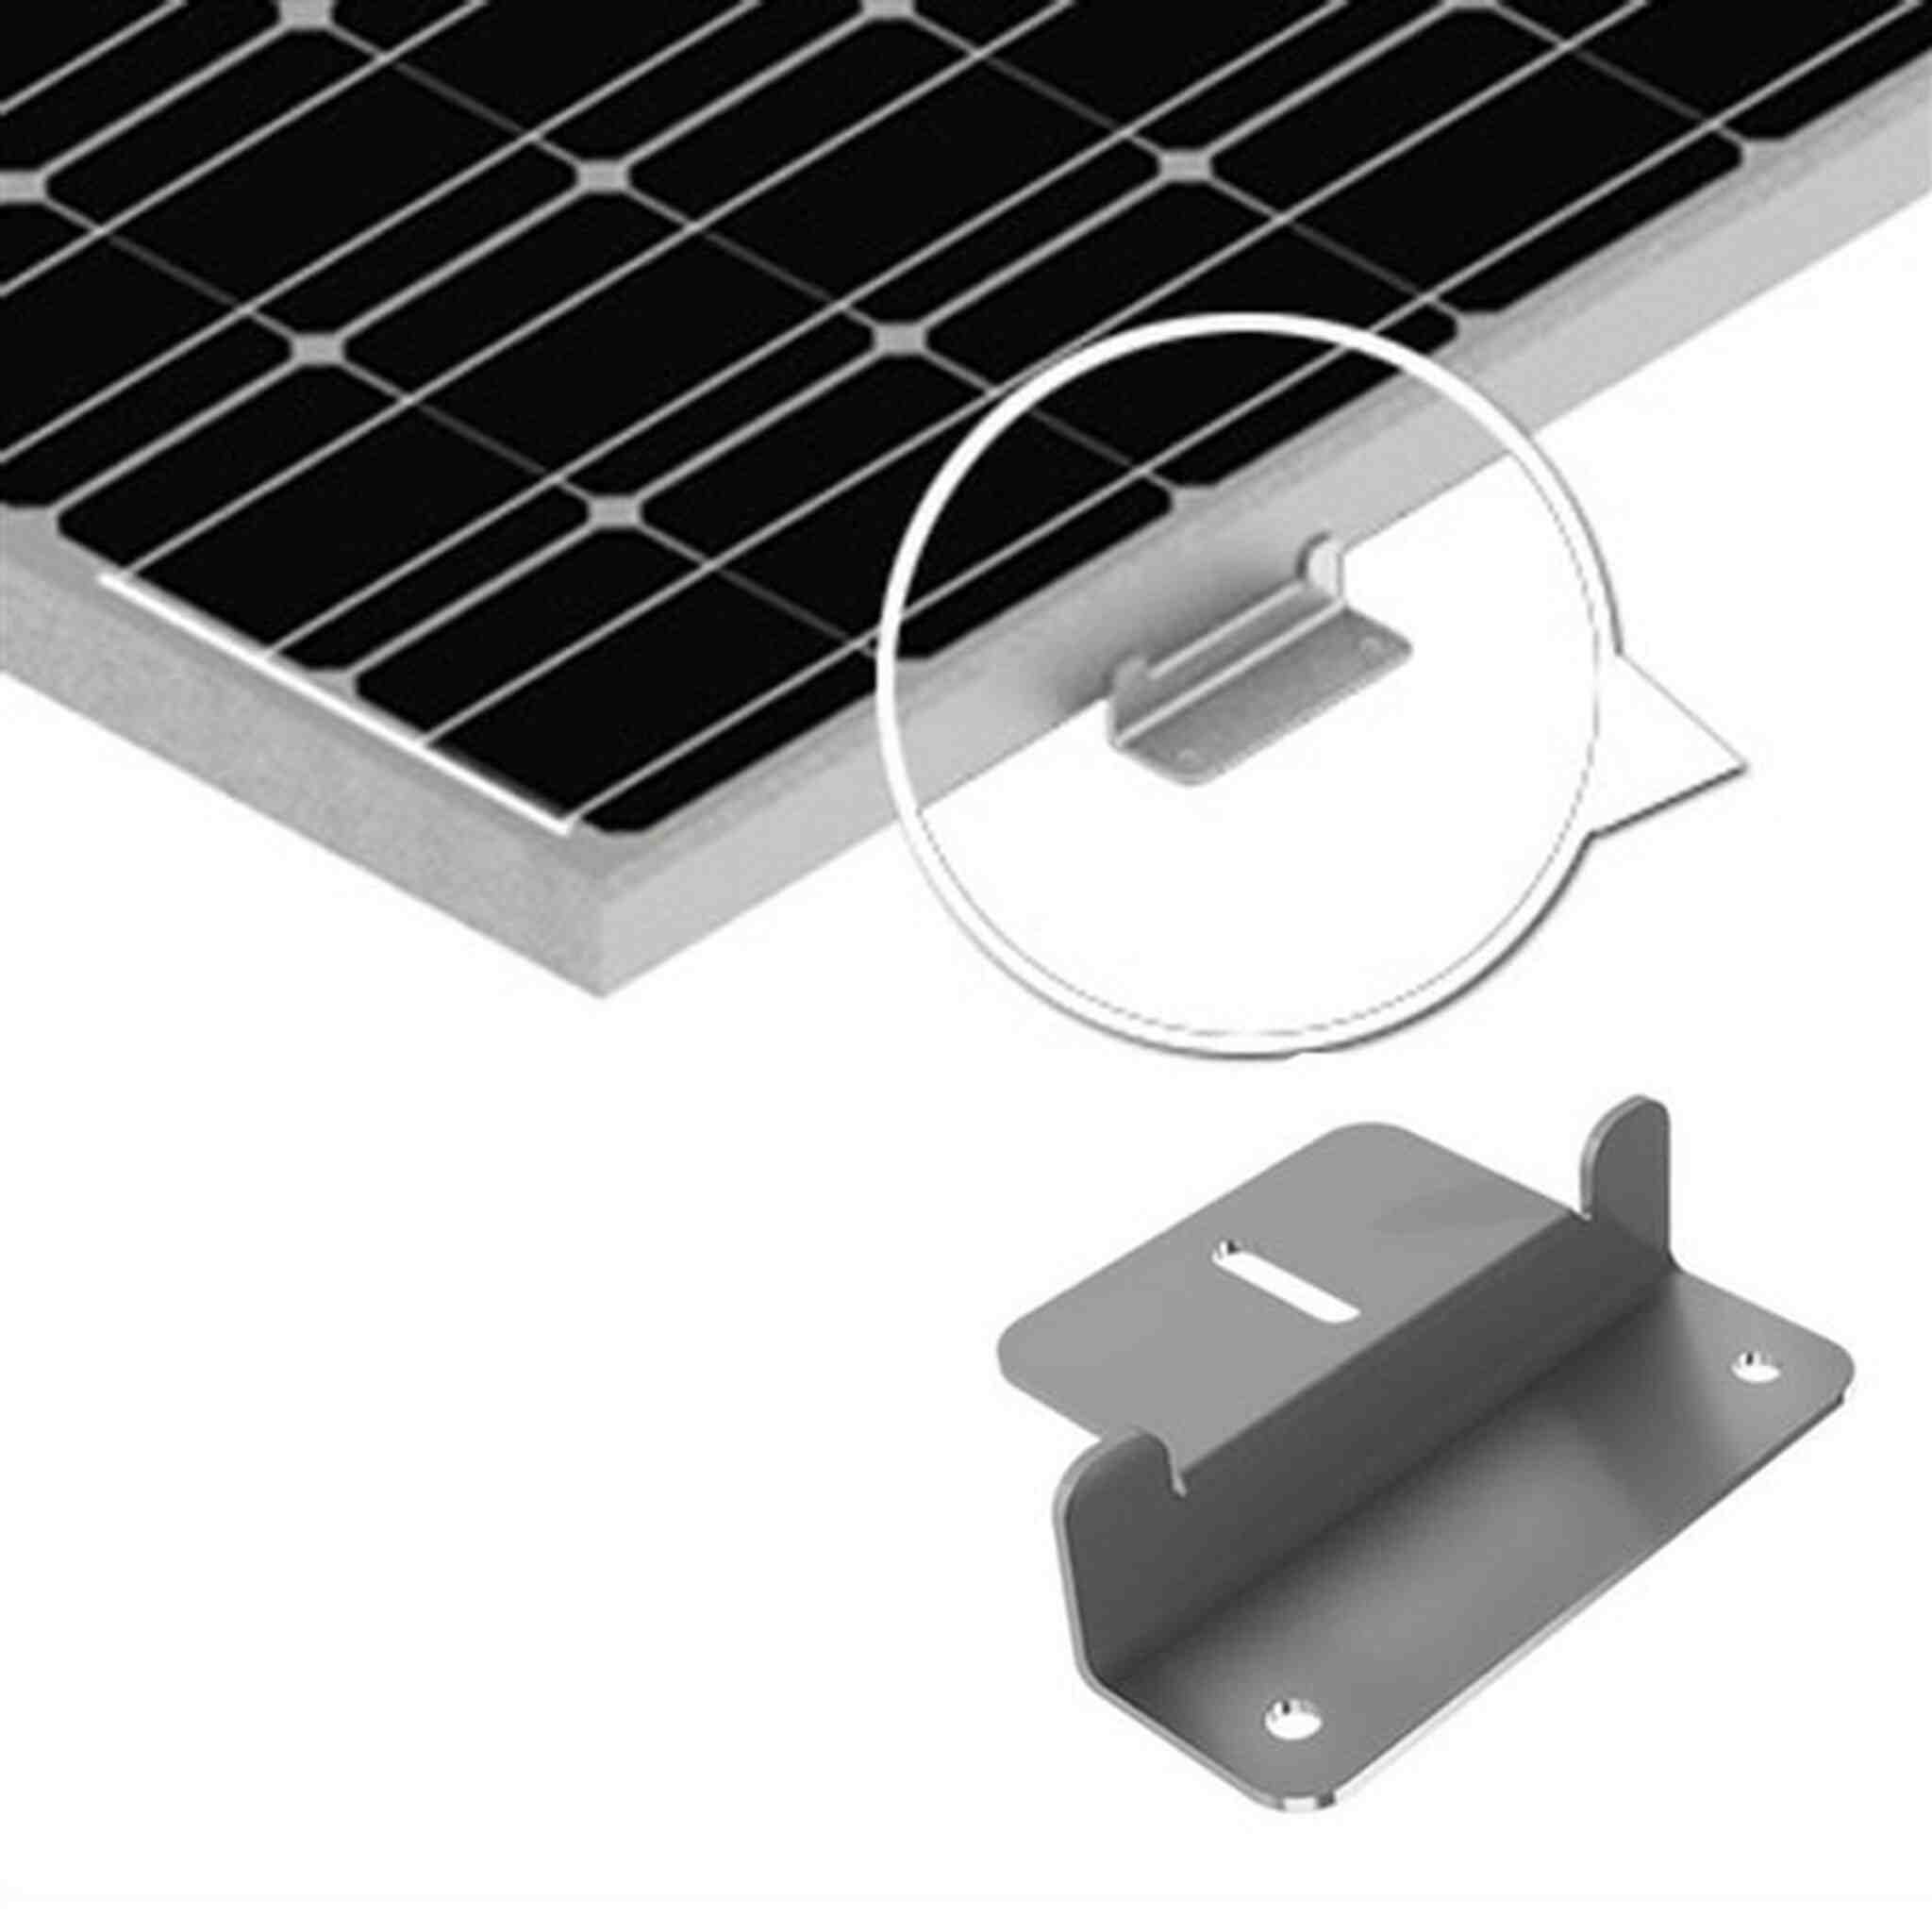 How do you install renogy solar RV?